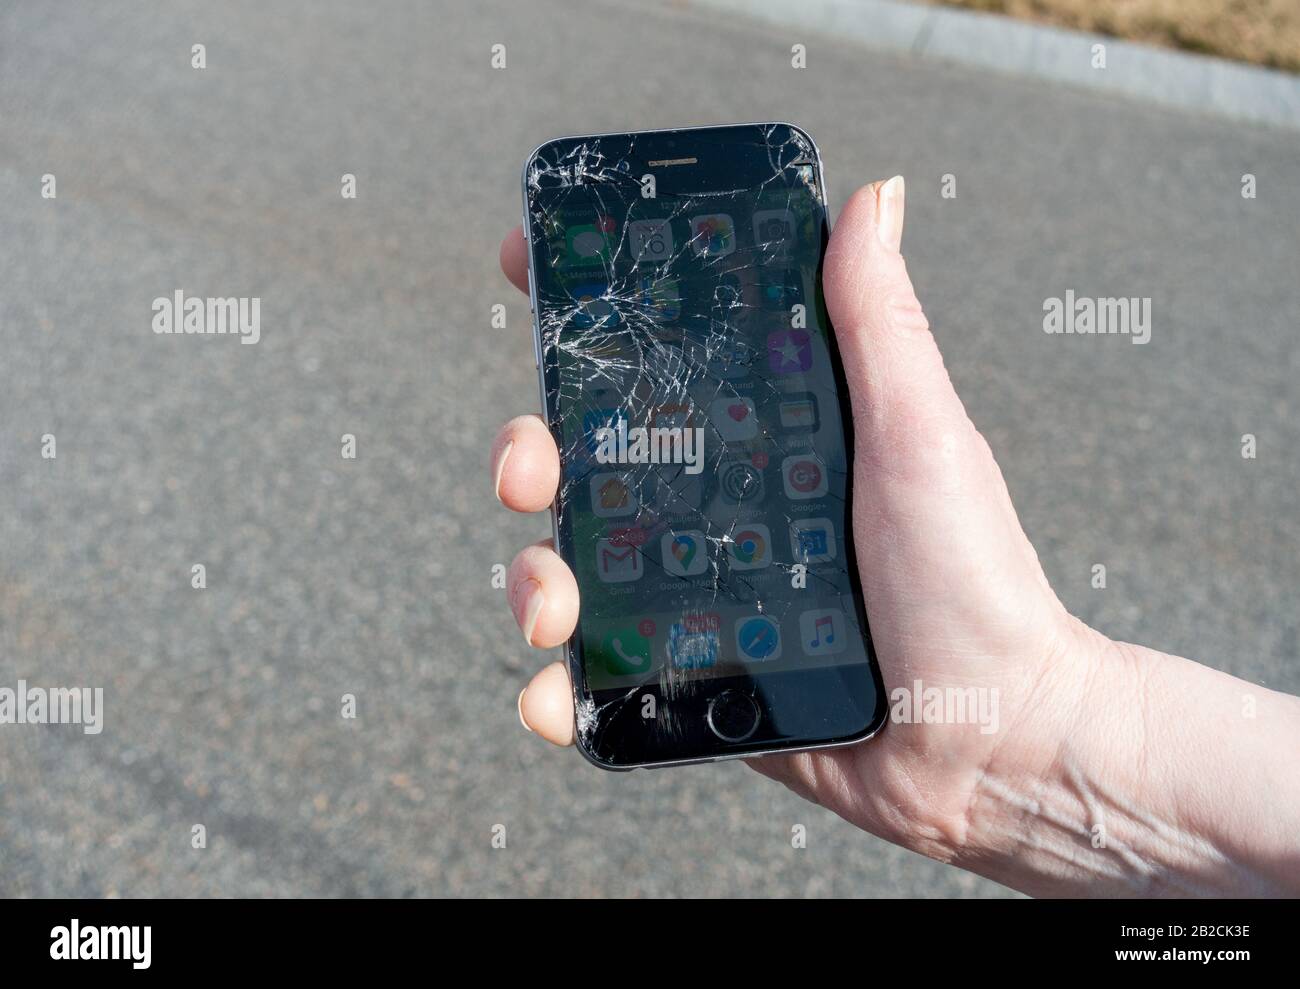 Iphone 6 immagini e fotografie stock ad alta risoluzione - Alamy